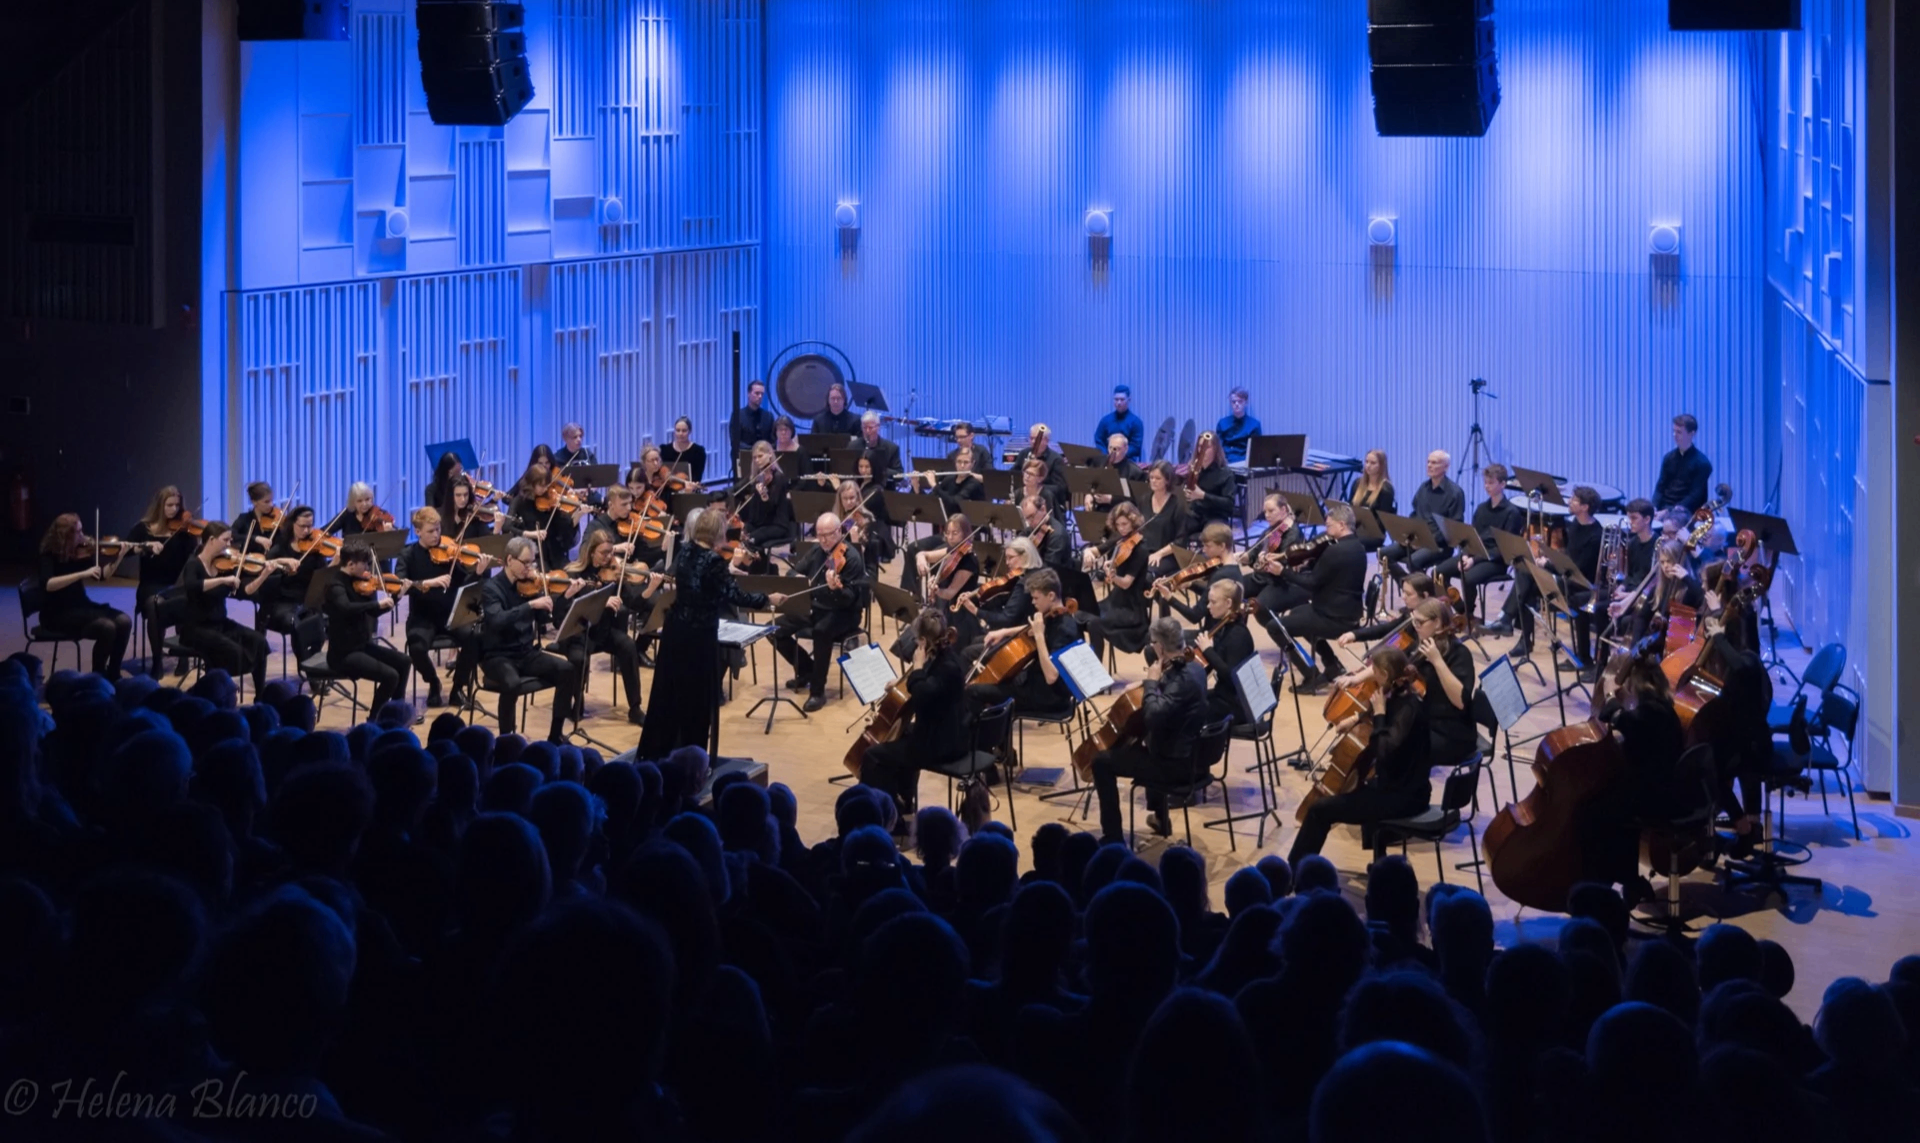 Bildbeskrivning saknas för evenemanget: Halmstads Symfoniorkester med "Ödessymfonin" (familjekonsert)